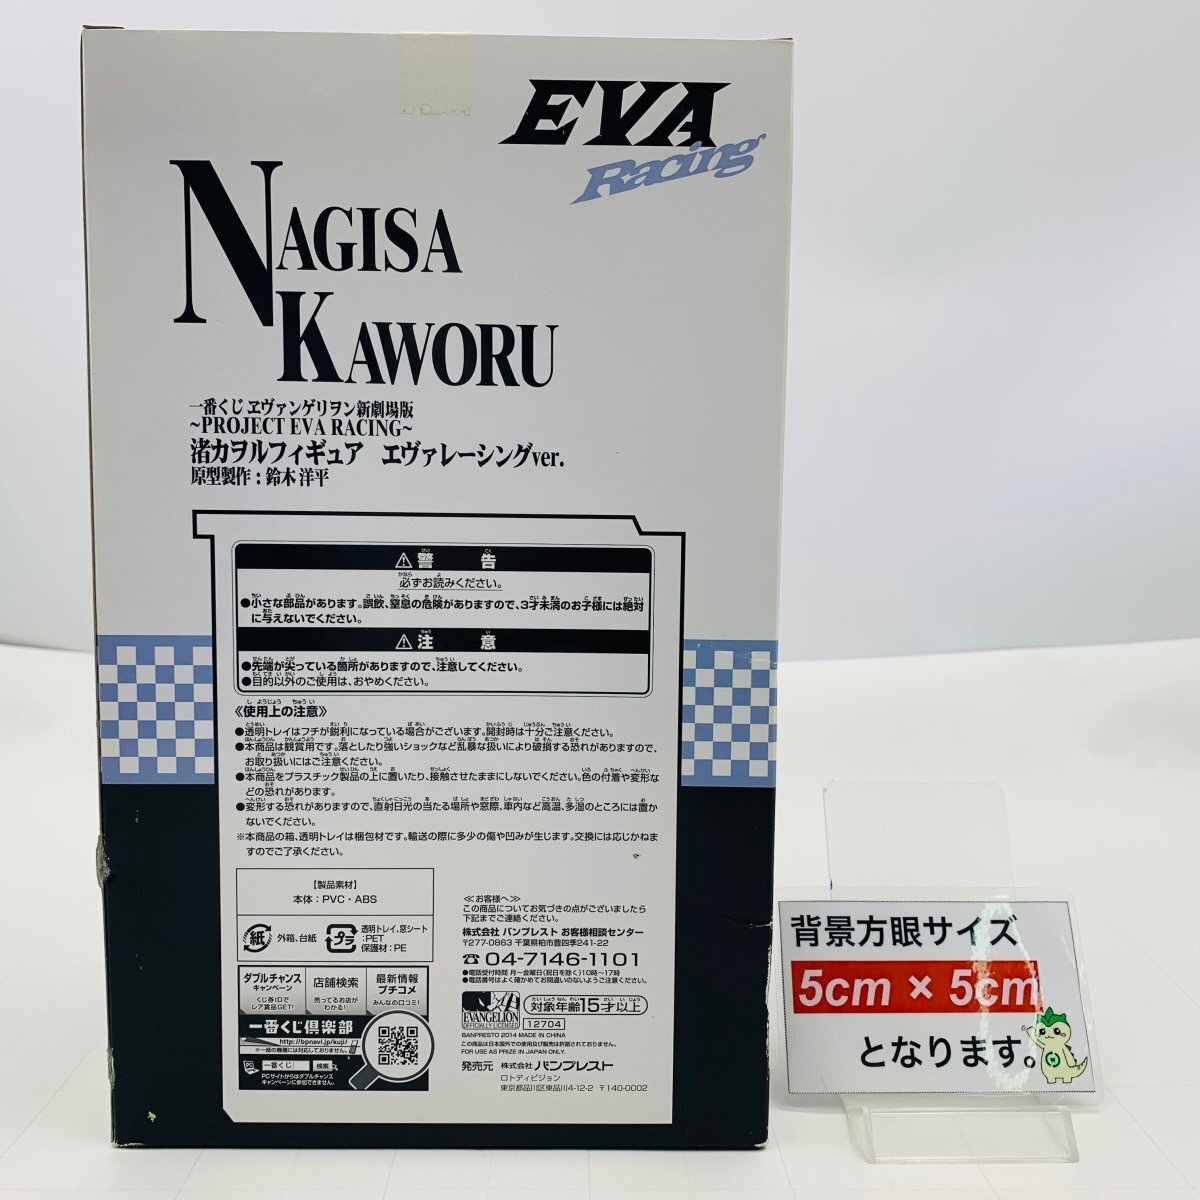  новый товар нераспечатанный самый жребий Evangelion новый театр версия PROJECT EVA RACING последний one . Nagisa Kaworu eva рейсинг ver.